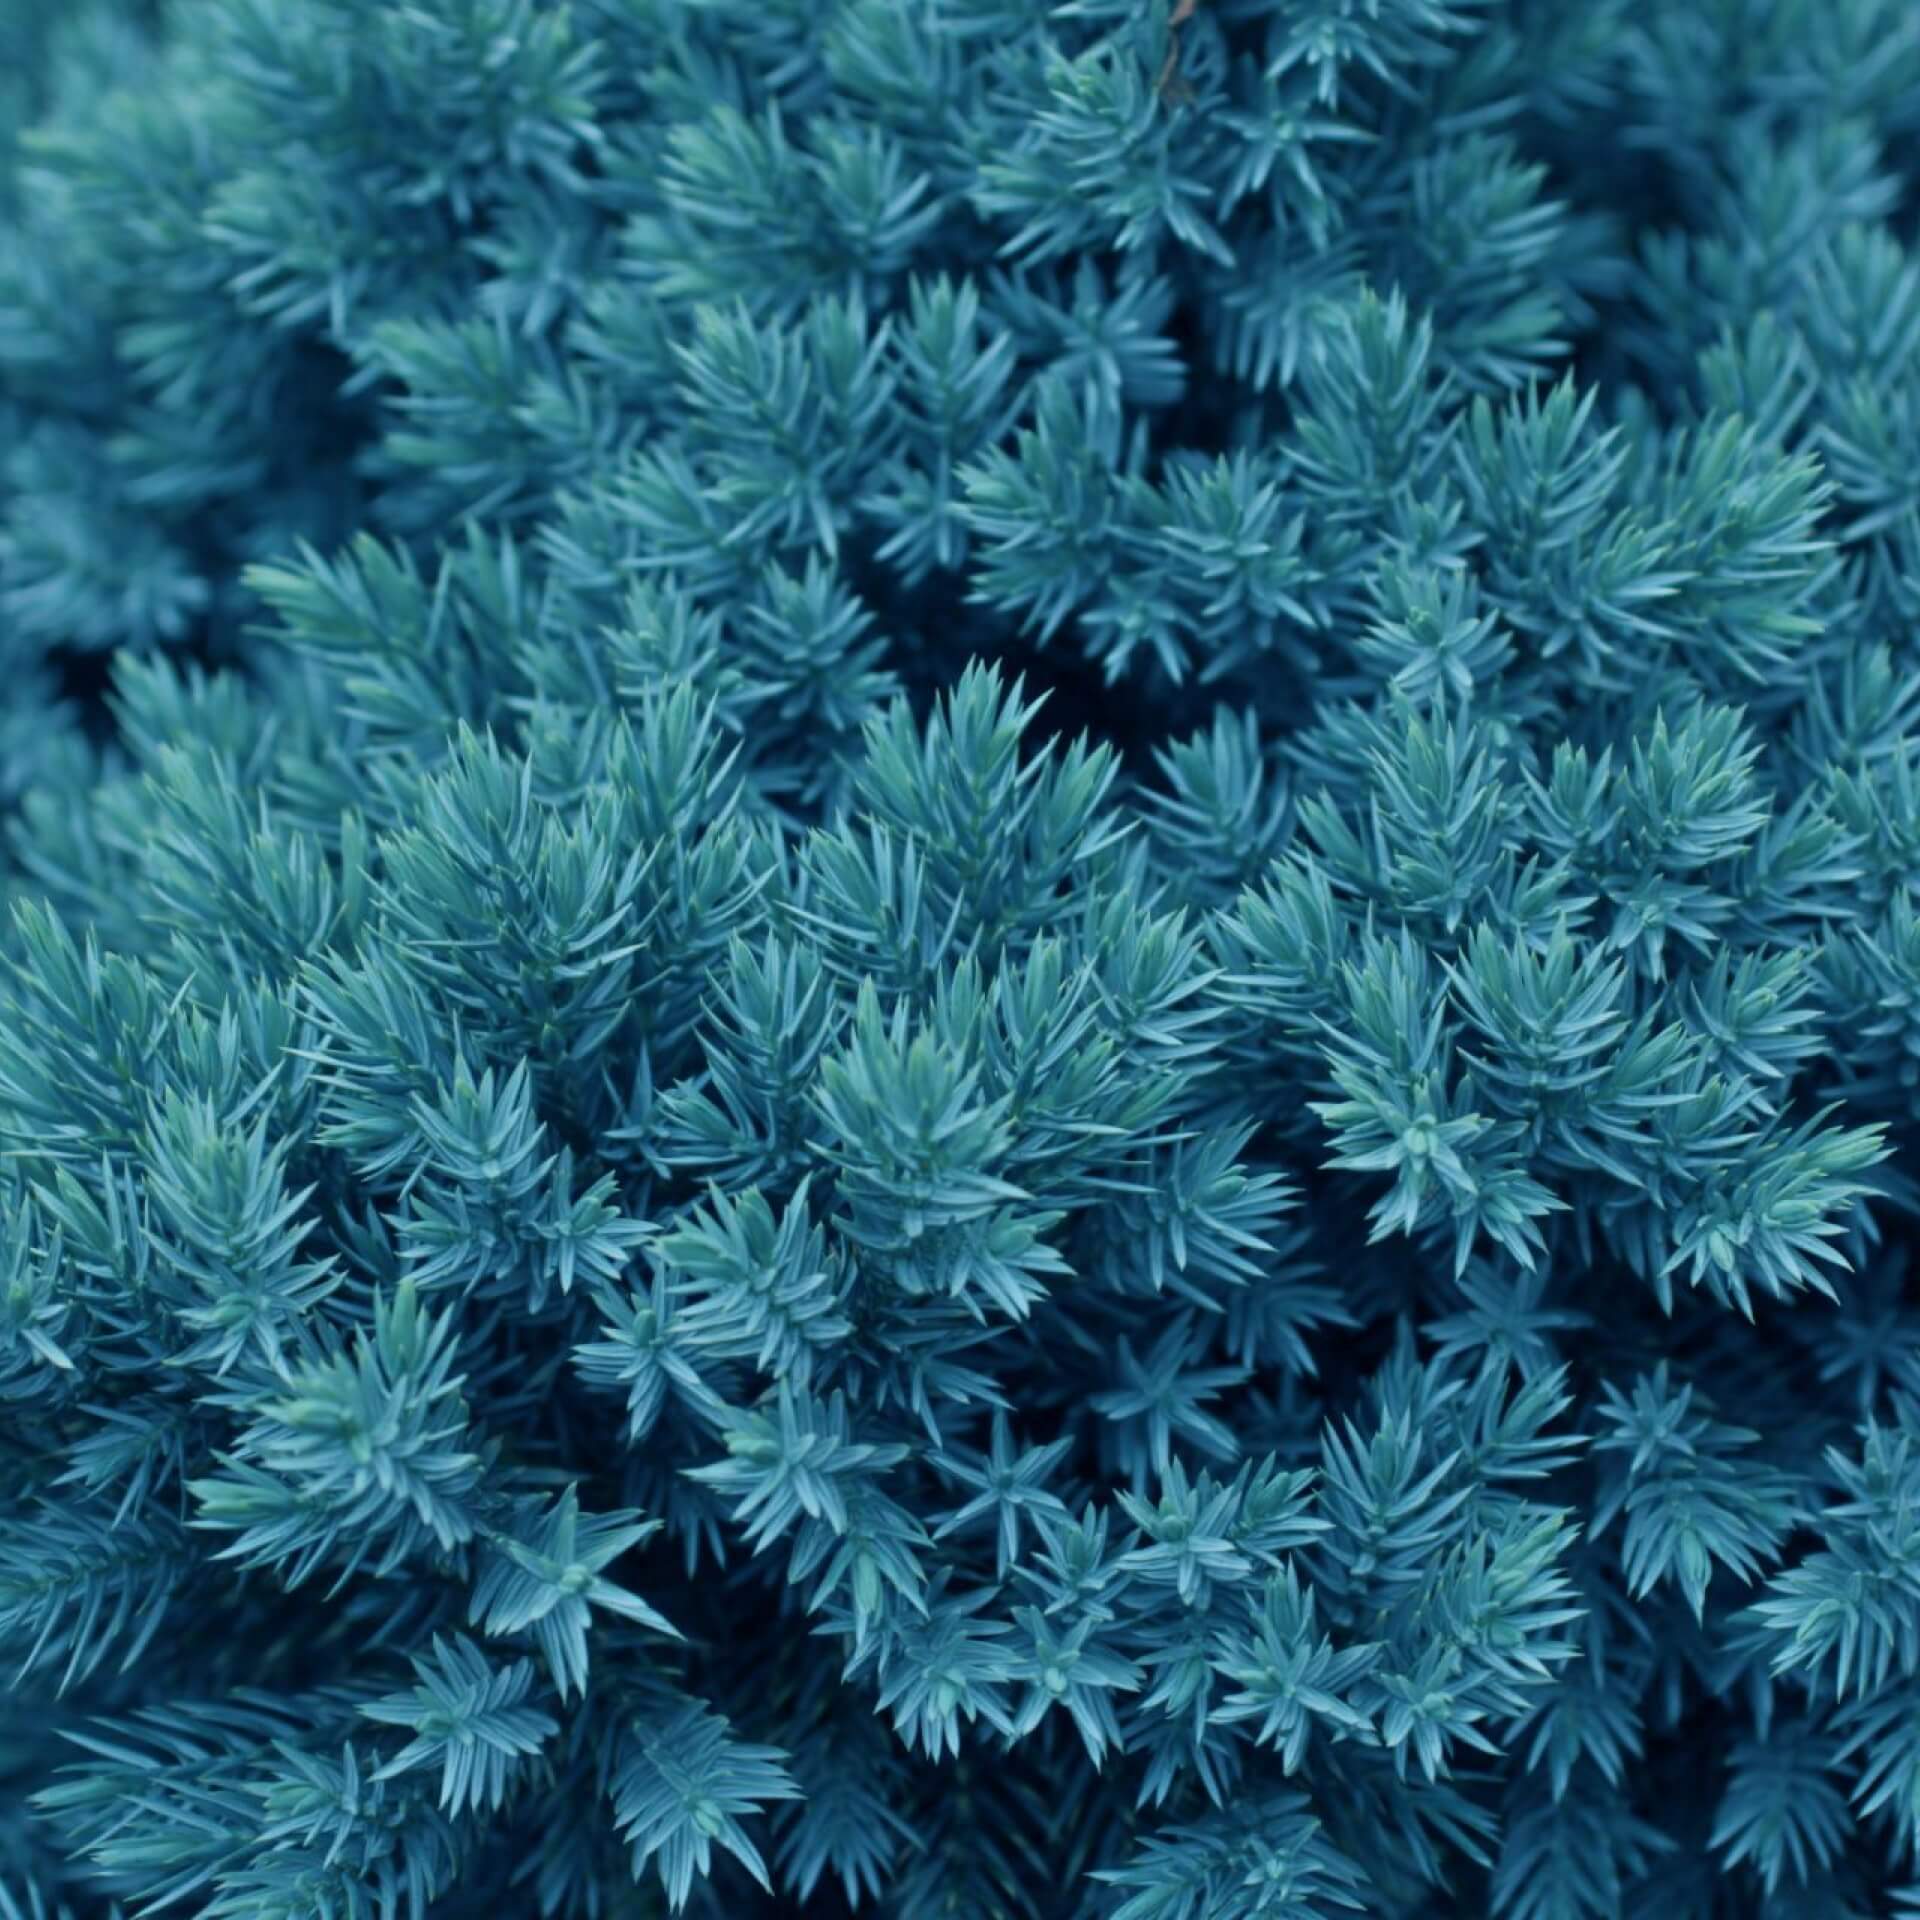 Teppichwacholder 'Blue Chip' (Juniperus horizontalis 'Blue Chip')